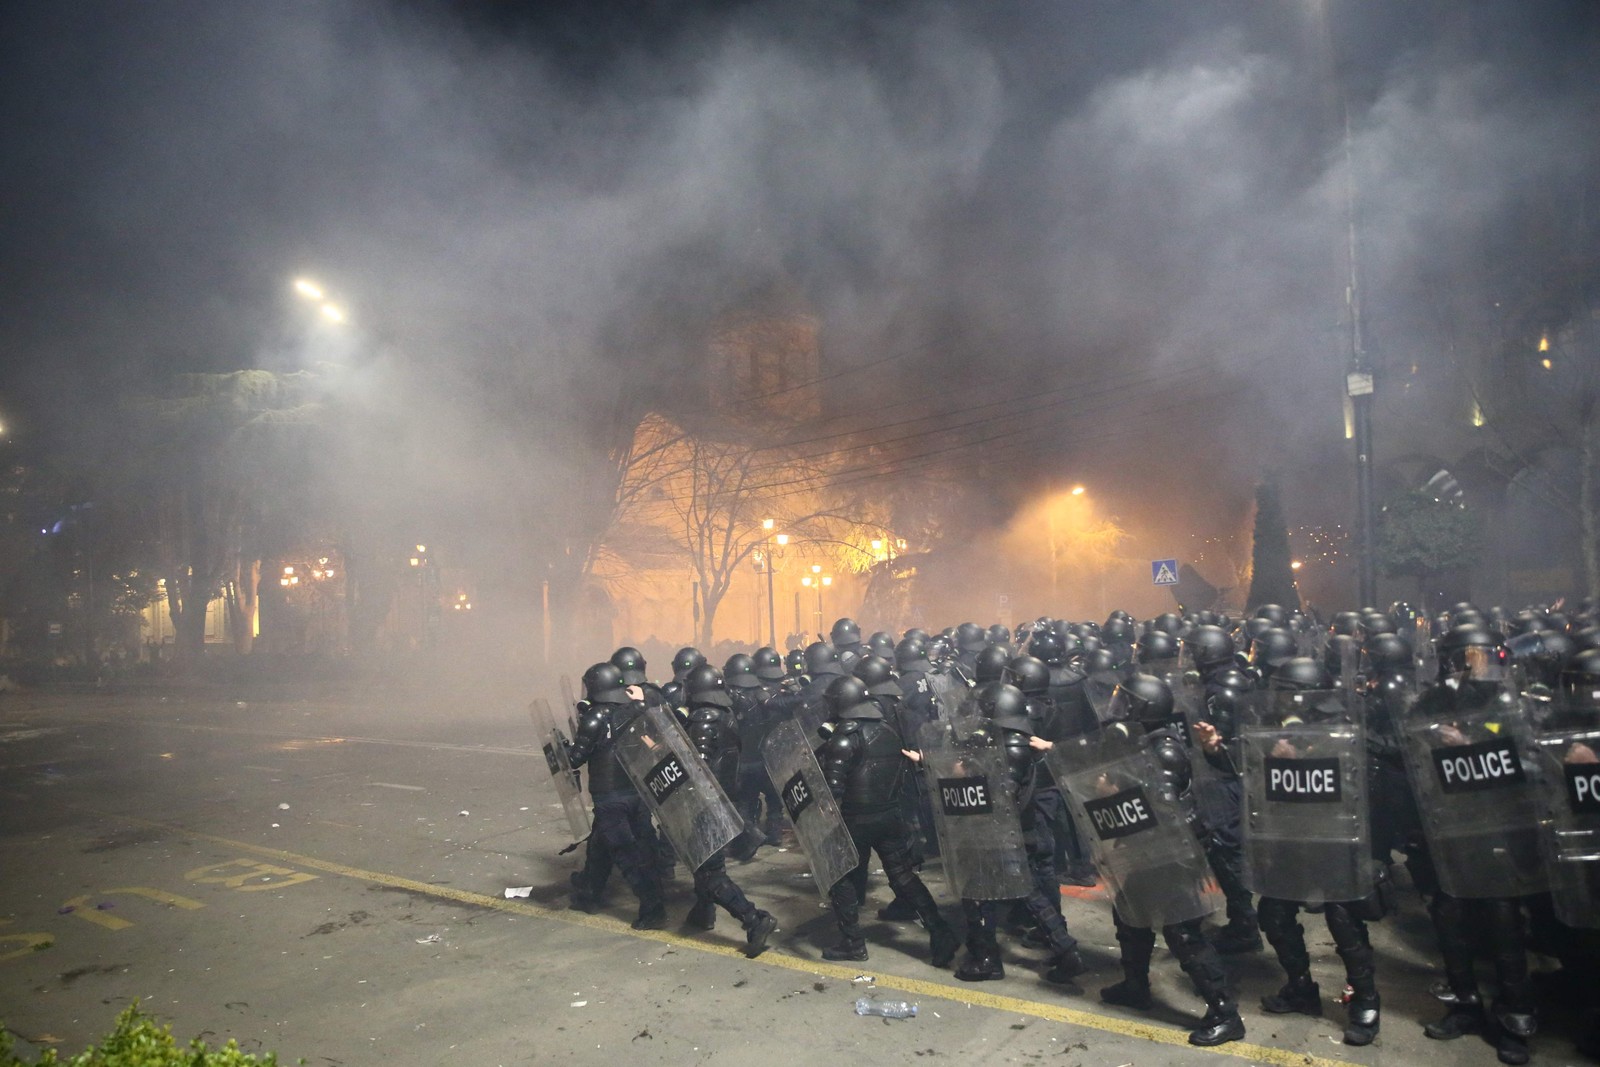 Polícia de choque enfrenta manifestantes em Tbilisi, em protesto contra a lei de "agente estrangeiro", que regulamenta imprensa na Geórgia — Foto: ZURAB TSERTSVADZE/AFP